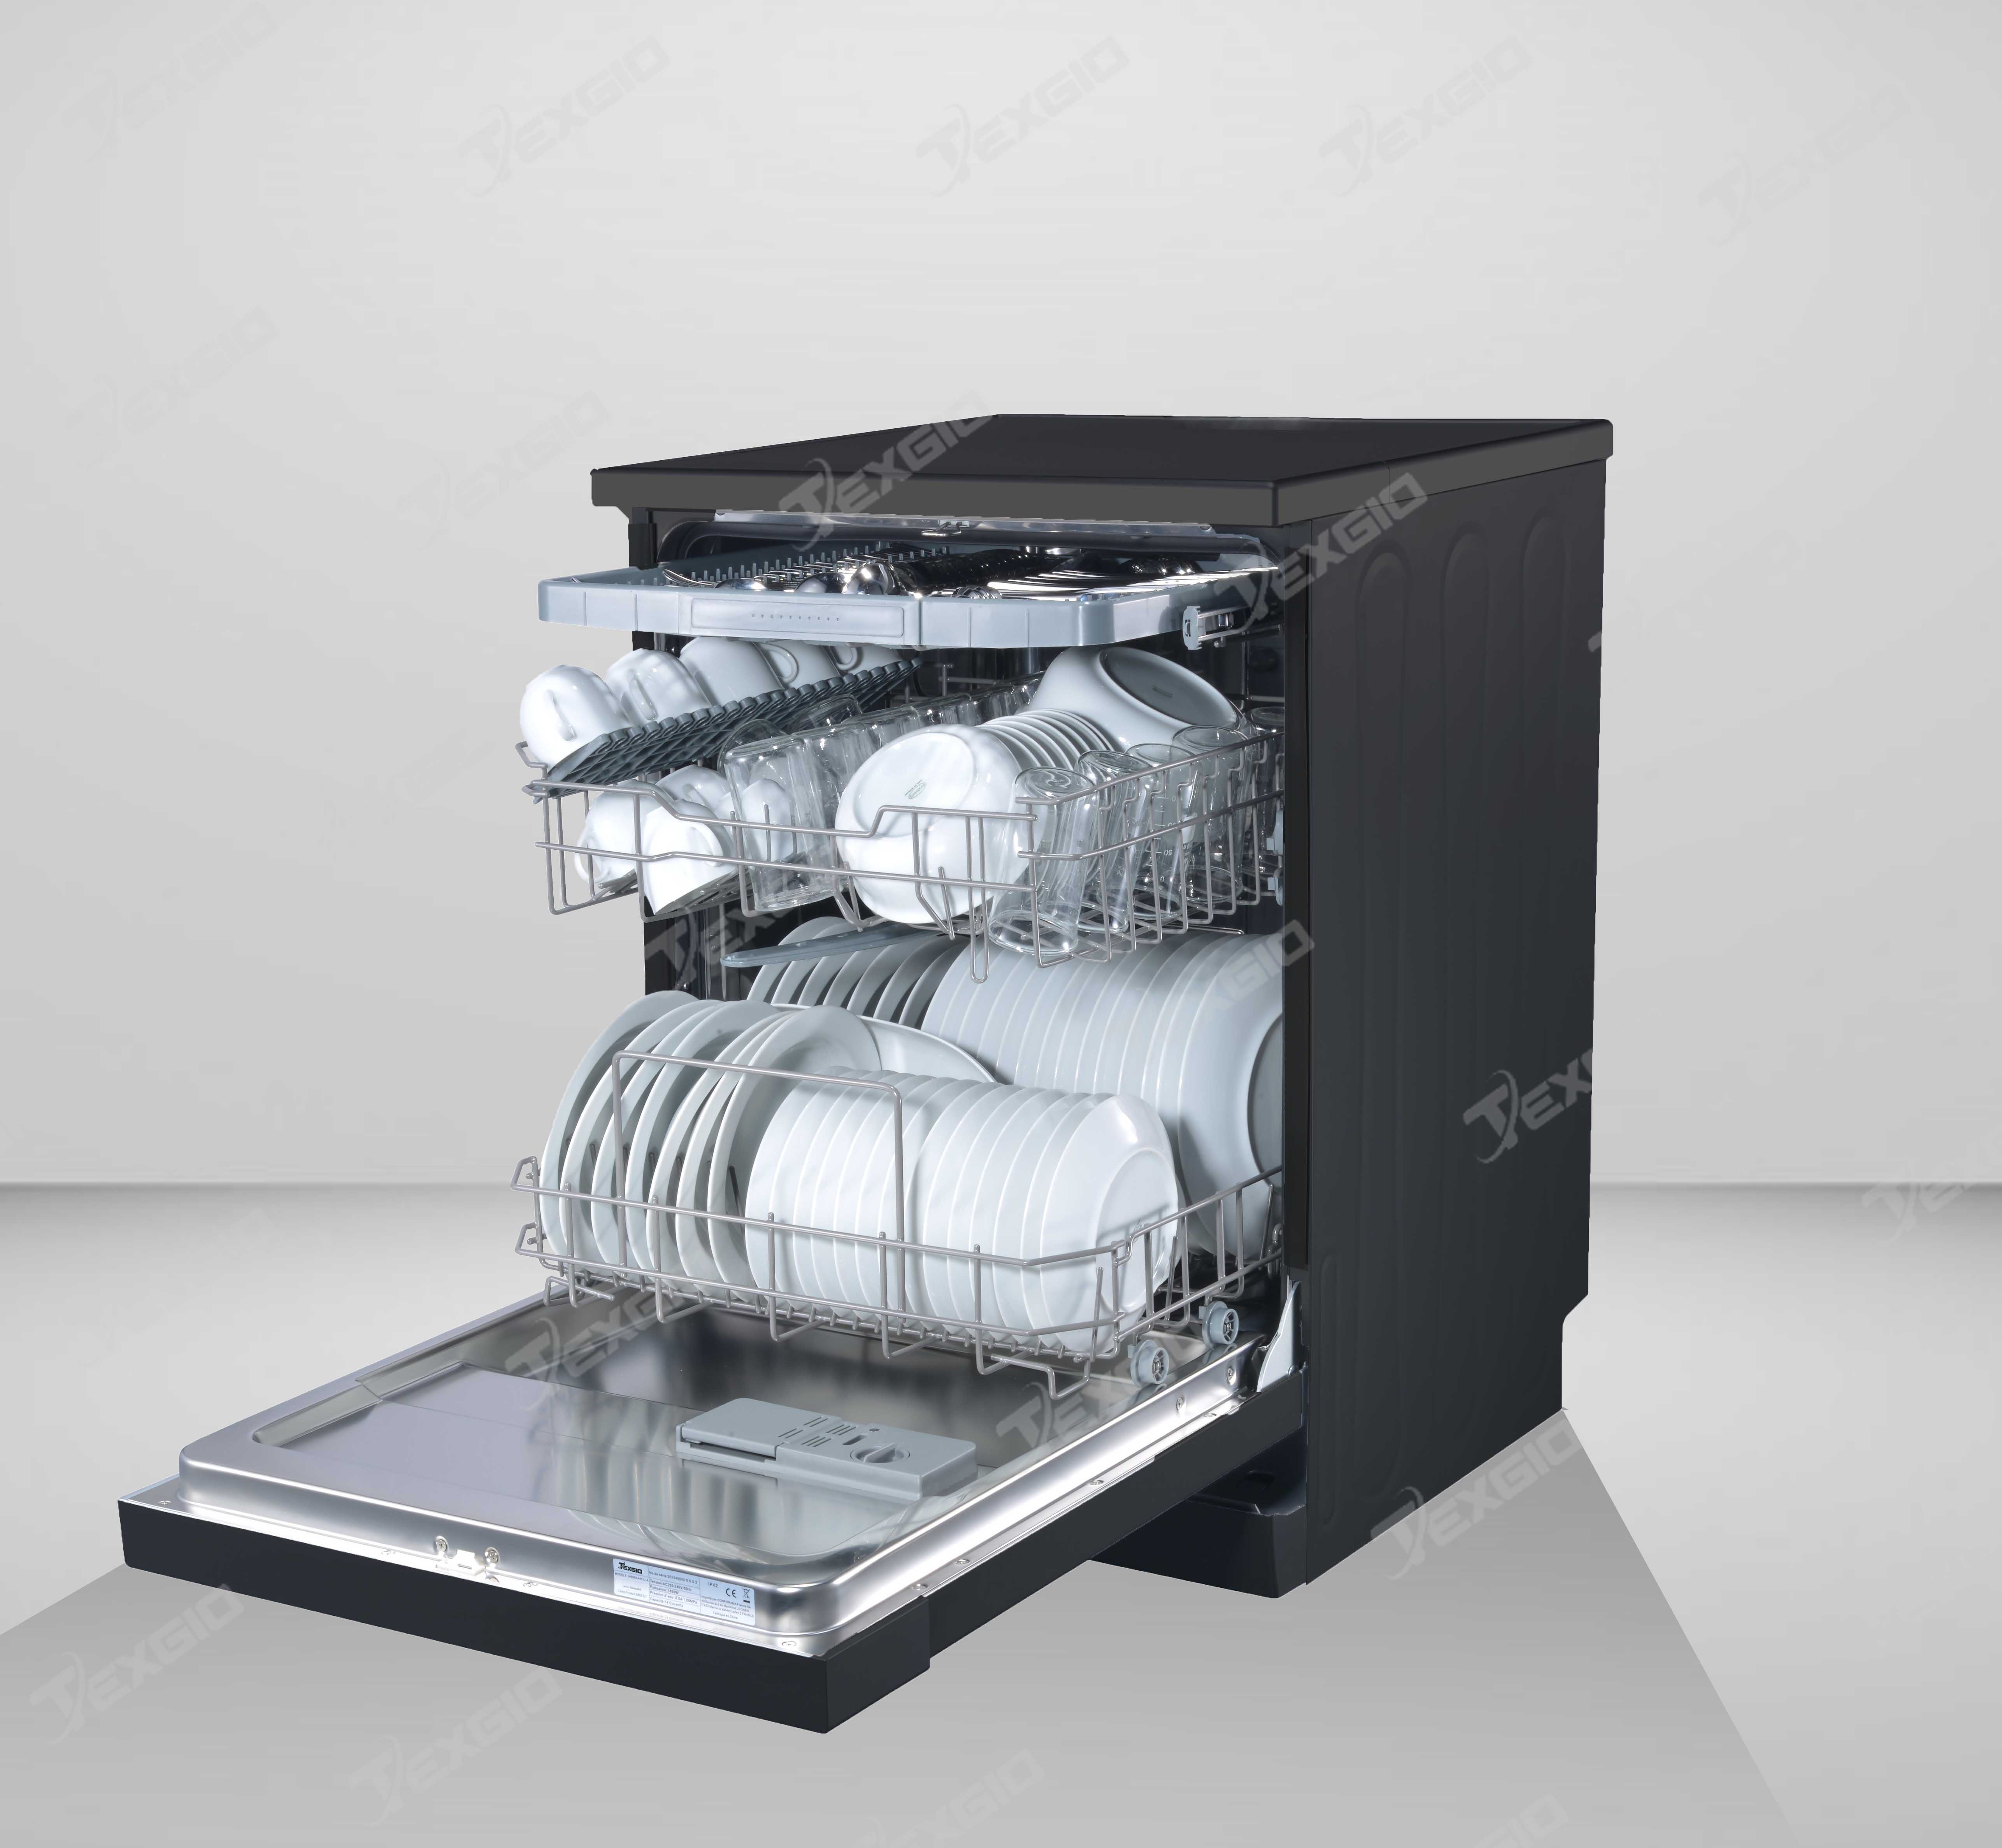 Texgio Dishwasher TGF6019B - 15 Bộ Sấy Turbo